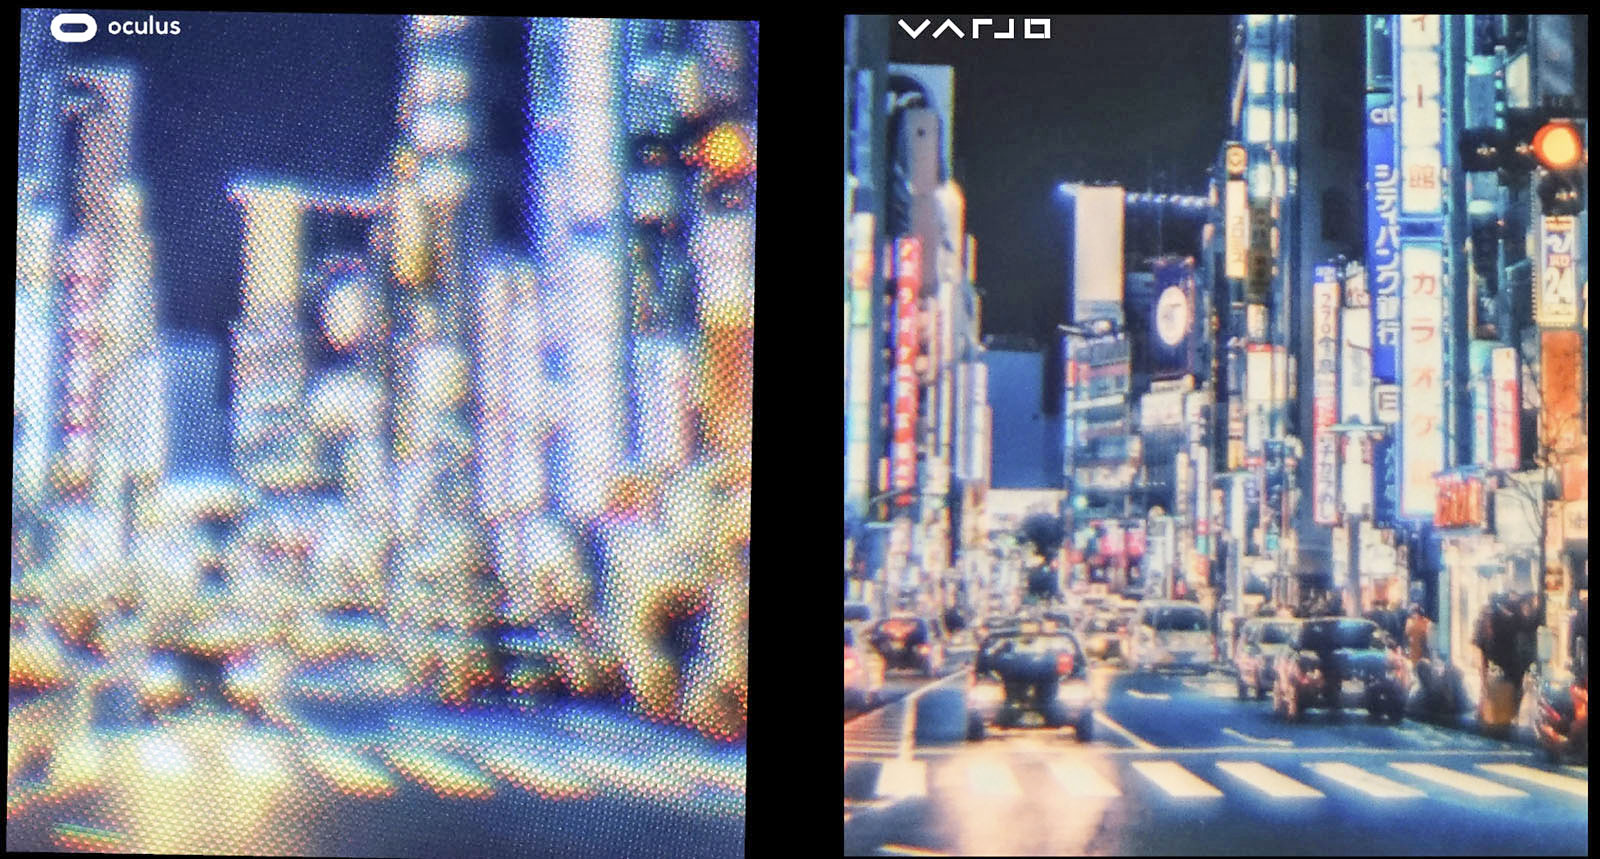 Varjo-VR-resolution-2017-06-19-07-ed.jpg